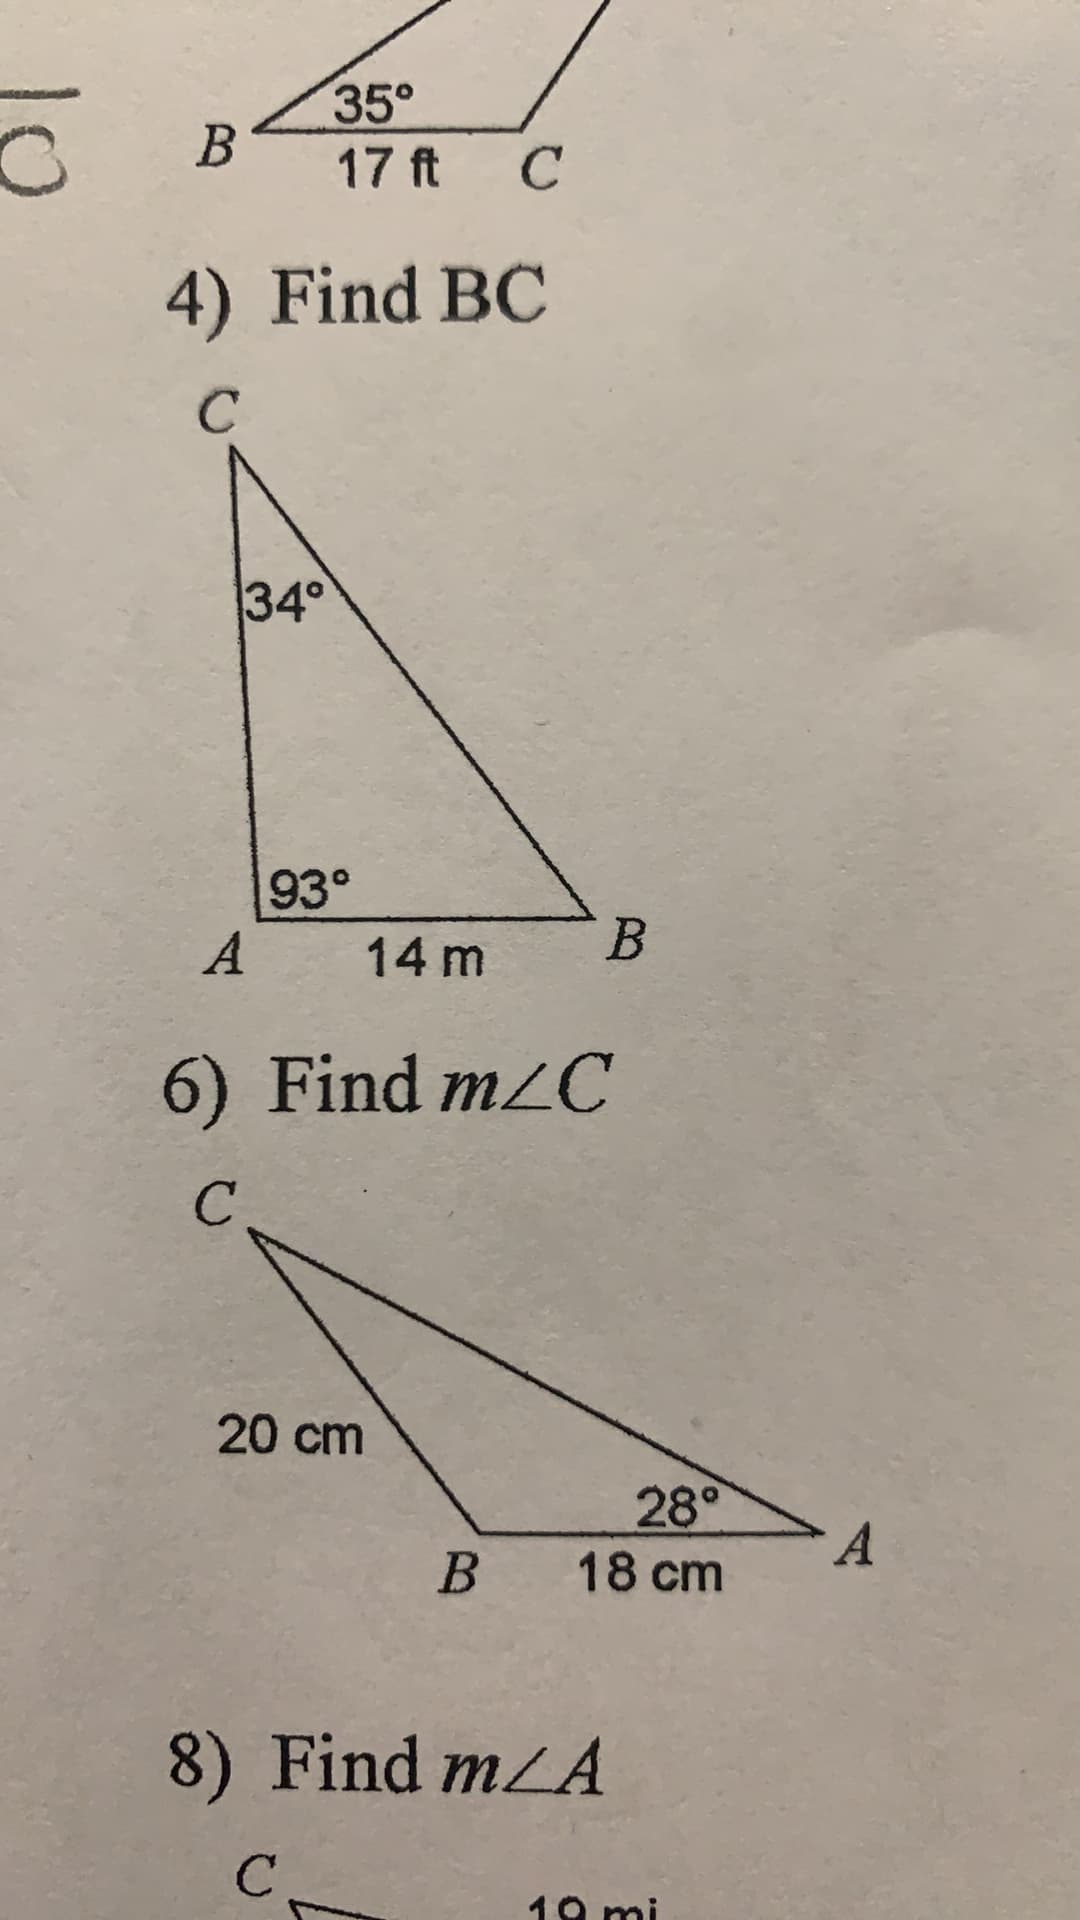 35°
17 ft C
4) Find BC
C.
34°
A
14 m
B.
6) Find m/C
20 cm
28°
18 cm
B.
8) Find mLA
19 m
